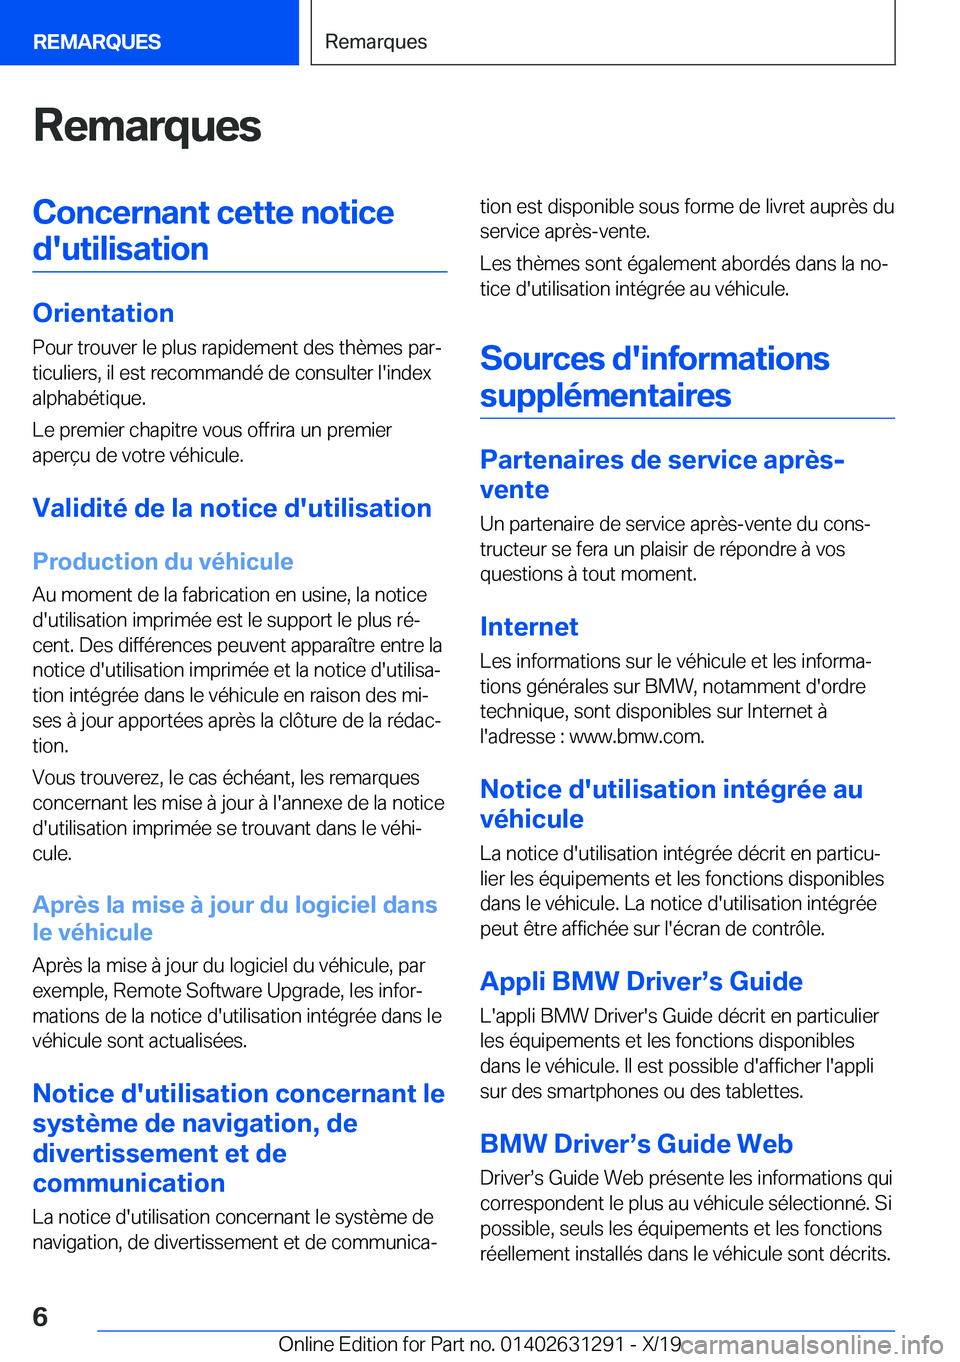 BMW M8 2020  Notices Demploi (in French) �R�e�m�a�r�q�u�e�s�C�o�n�c�e�r�n�a�n�t��c�e�t�t�e��n�o�t�i�c�e�d�'�u�t�i�l�i�s�a�t�i�o�n
�O�r�i�e�n�t�a�t�i�o�n �P�o�u�r��t�r�o�u�v�e�r��l�e��p�l�u�s��r�a�p�i�d�e�m�e�n�t��d�e�s��t�h�è�m�